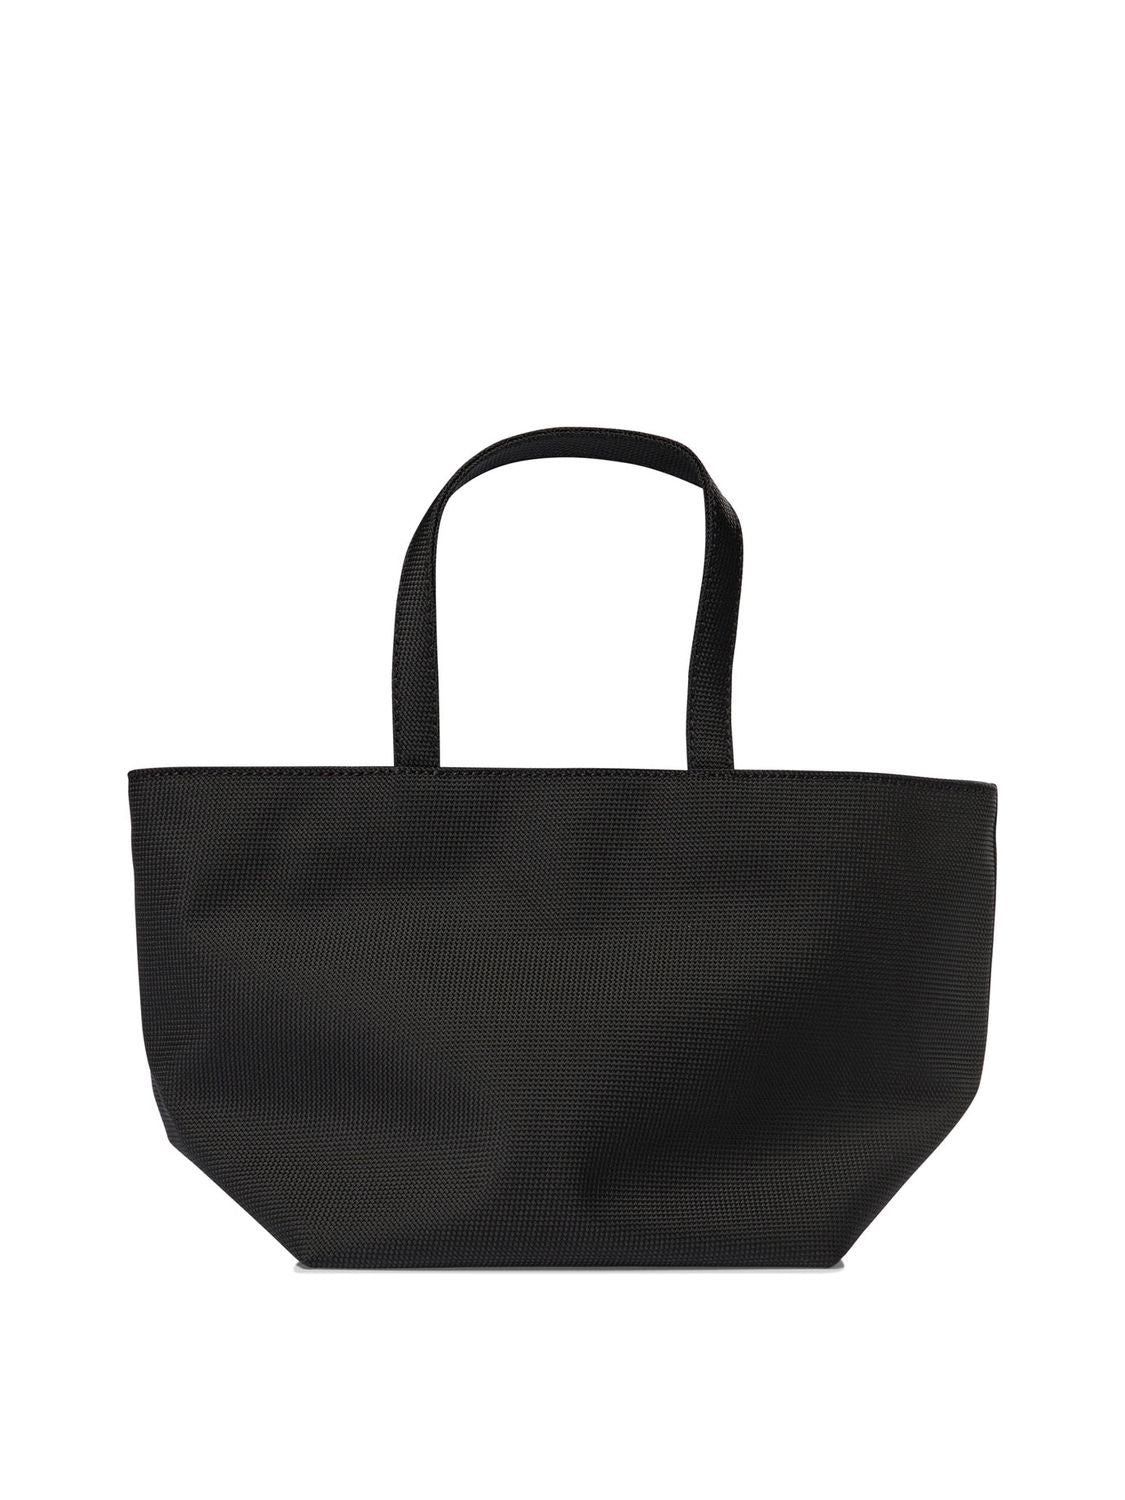 ALEXANDER WANG "PUNCH SMALL" Tote Handbag Handbag